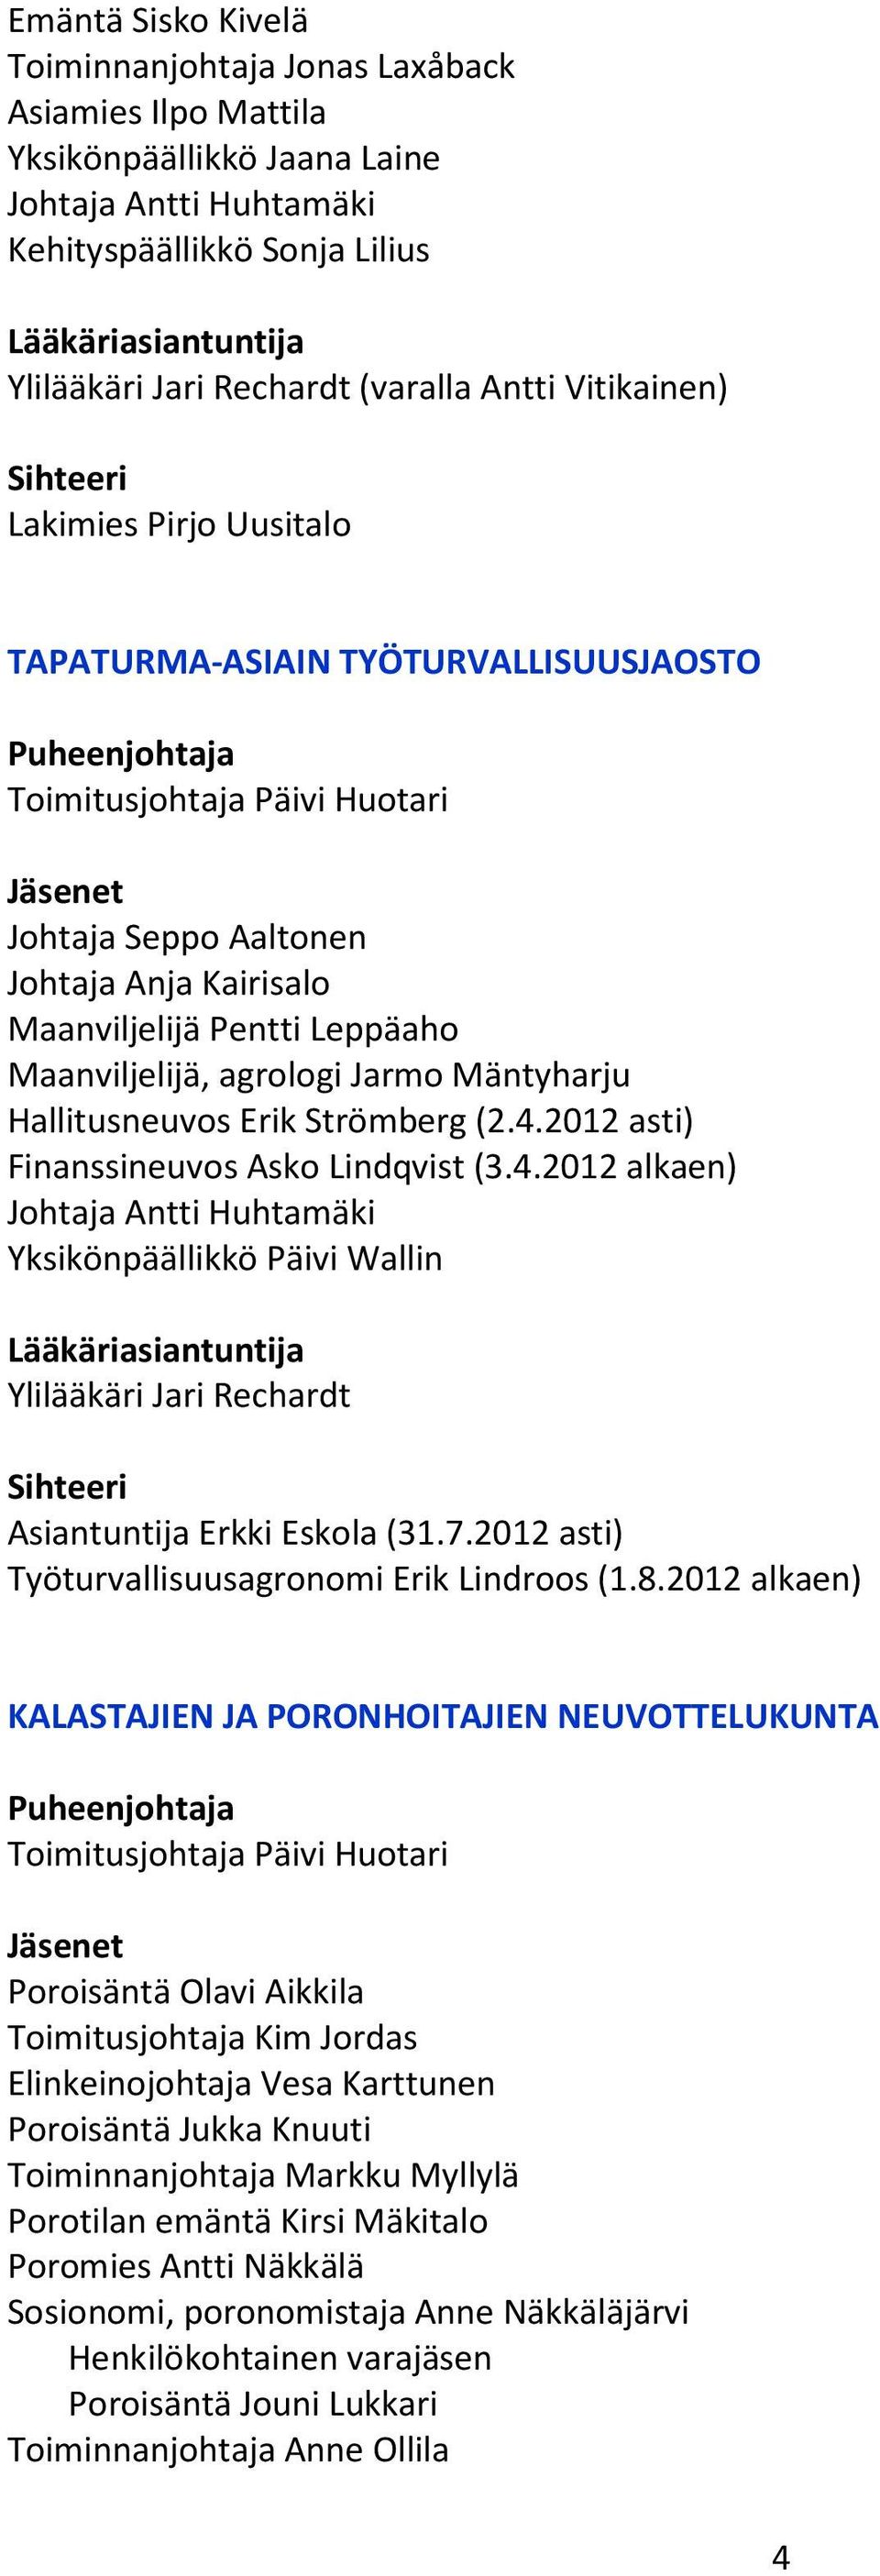 2012 asti) Finanssineuvos Asko Lindqvist (3.4.2012 alkaen) Yksikönpäällikkö Päivi Wallin Lääkäriasiantuntija Ylilääkäri Jari Rechardt Asiantuntija Erkki Eskola (31.7.